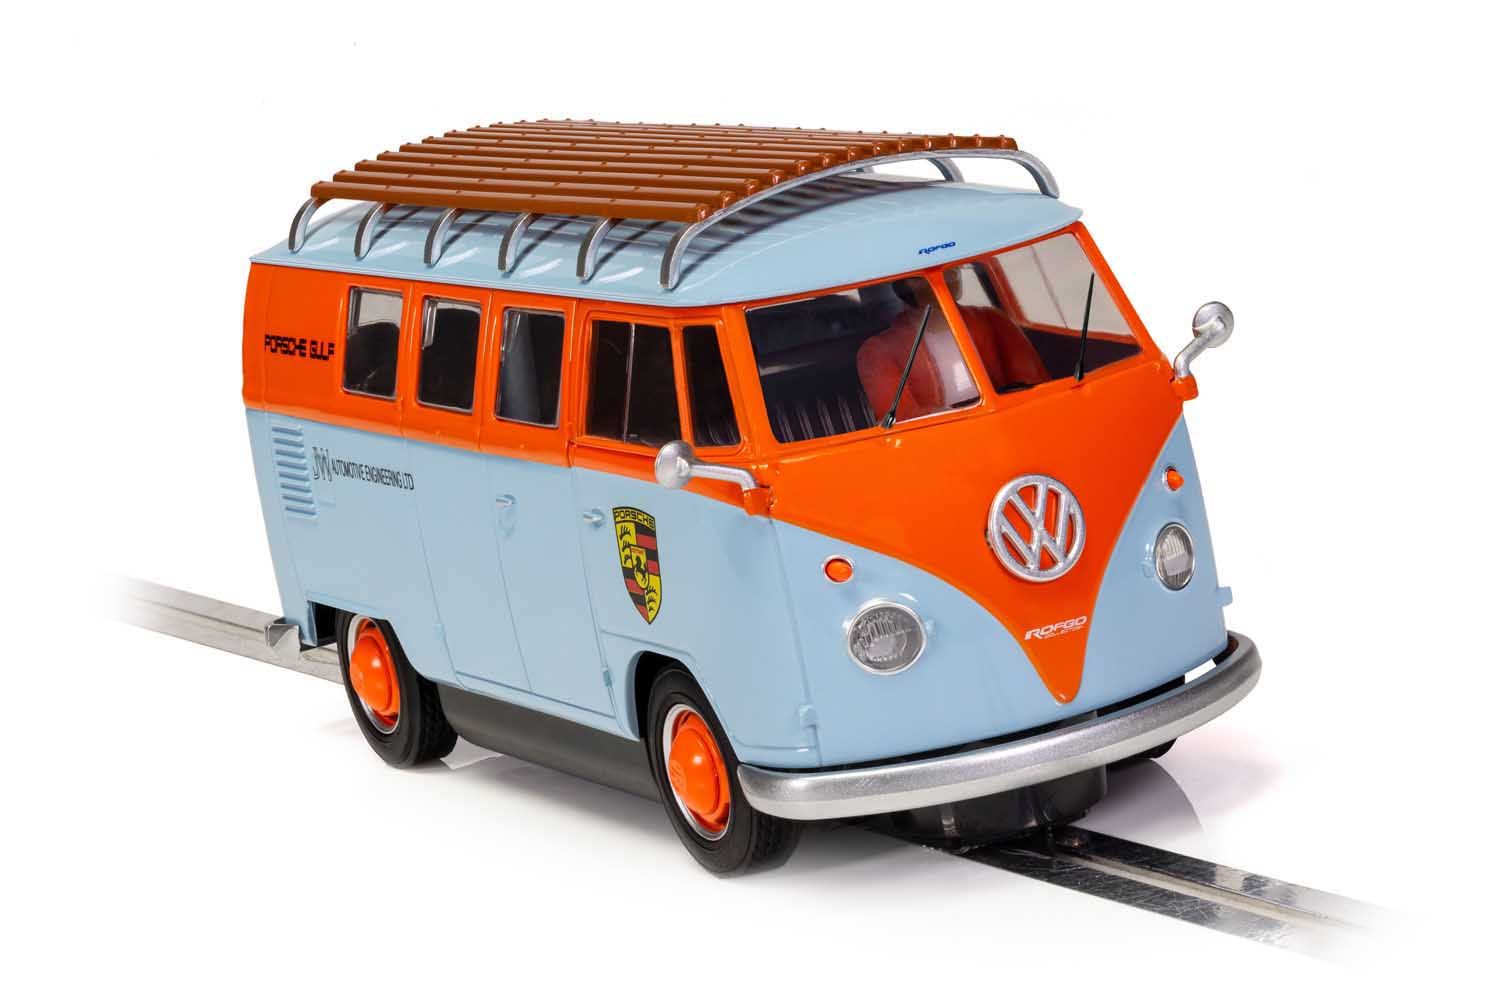 Bus miniature VW T1 Europa-Park - Europa-Park Boutique en ligne